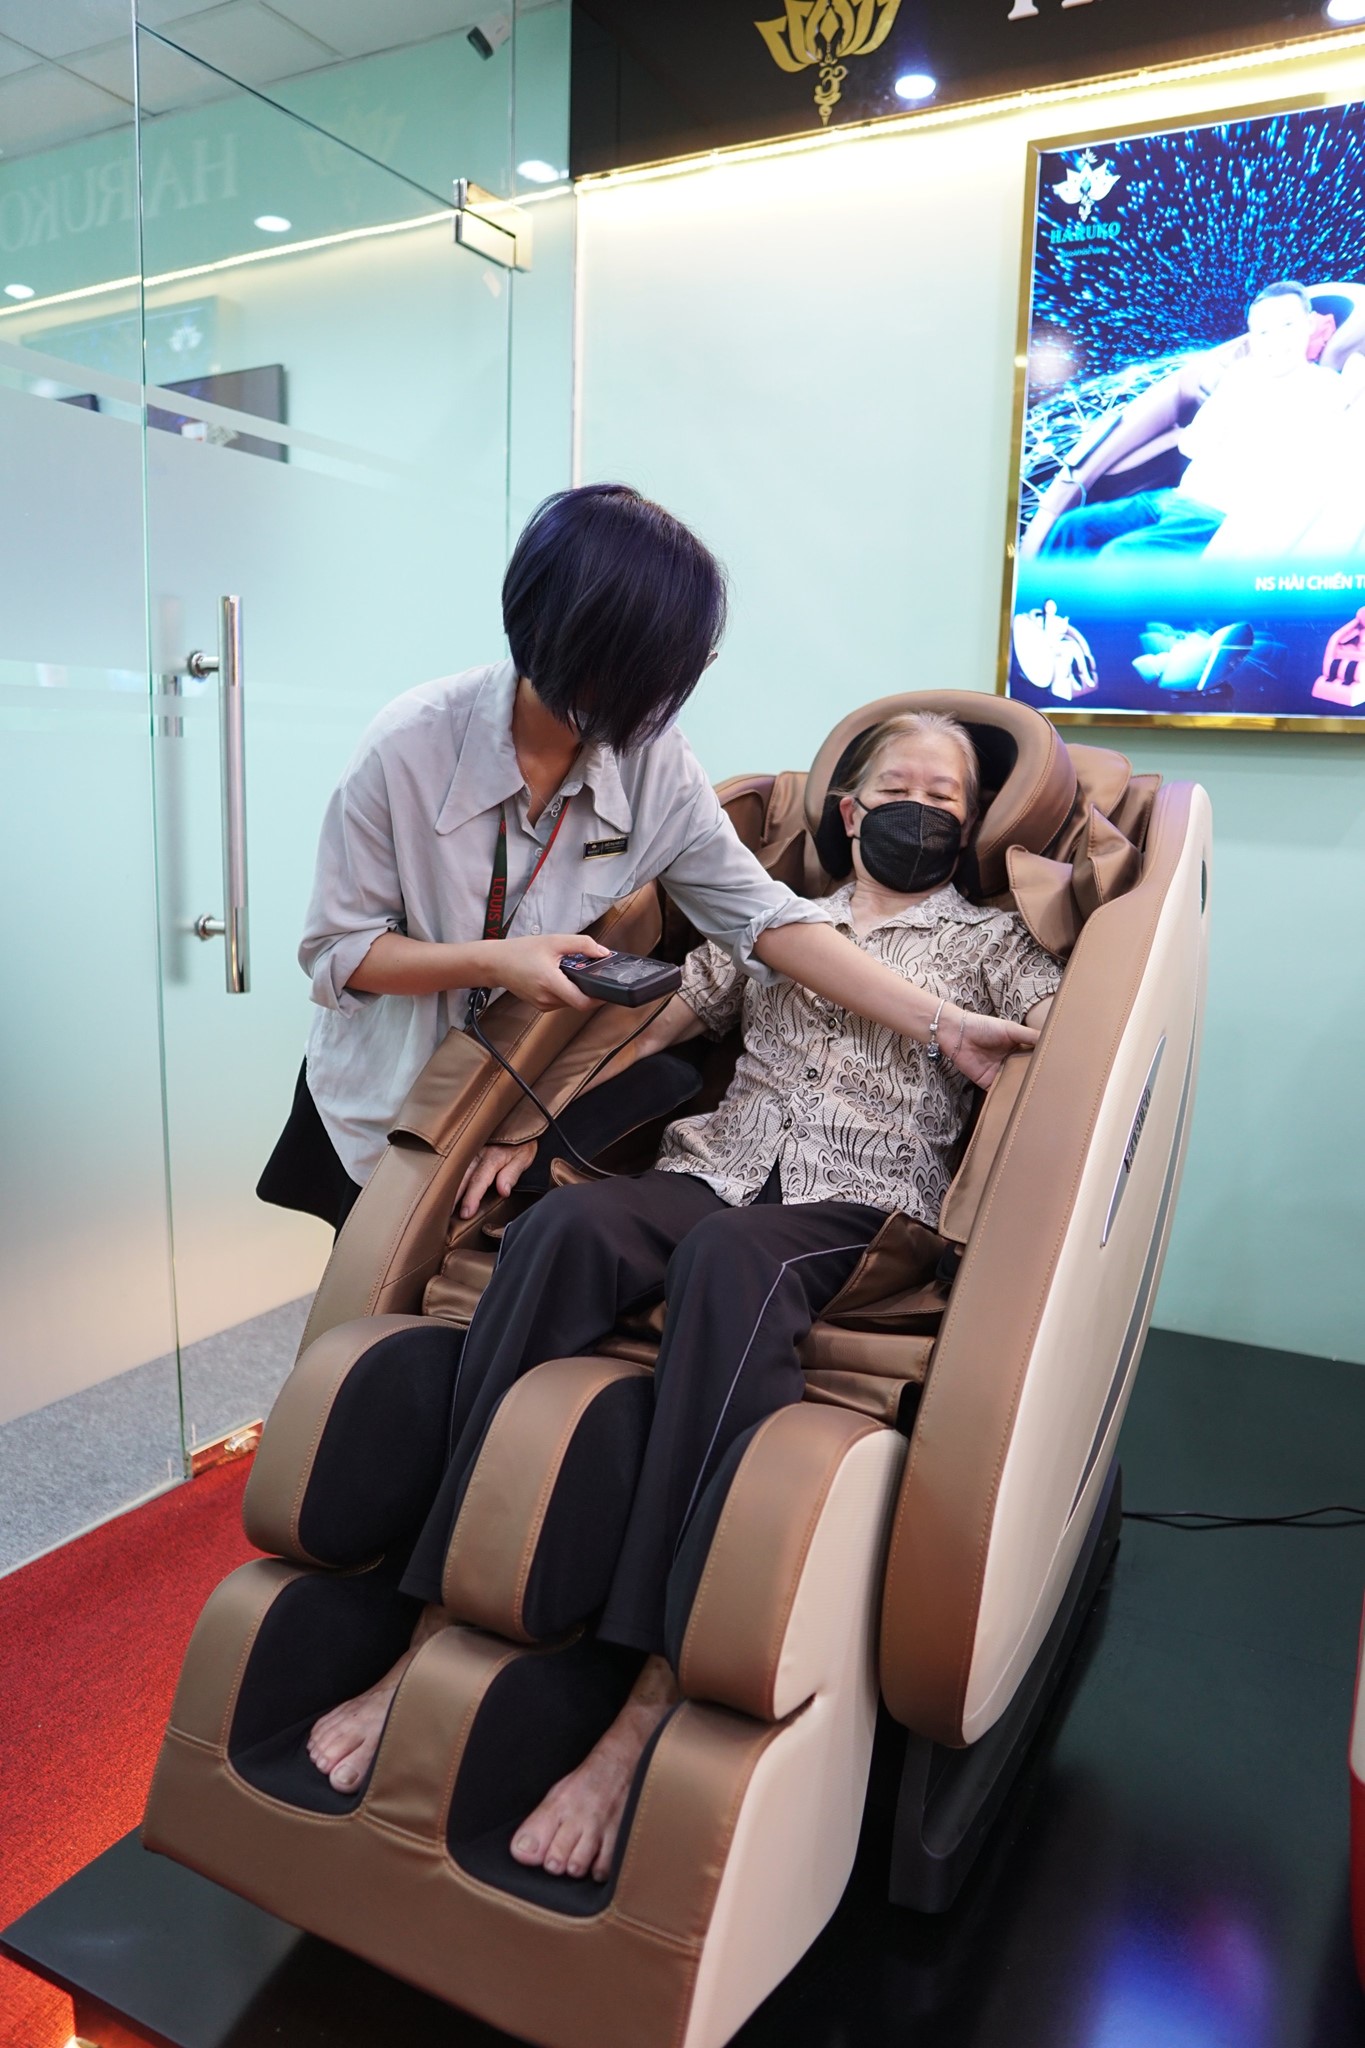 Trải nghiệm trực tiếp sản phẩm ghế massage tại Showroom để đưa ra quyết định đúng đắn trước khi mua